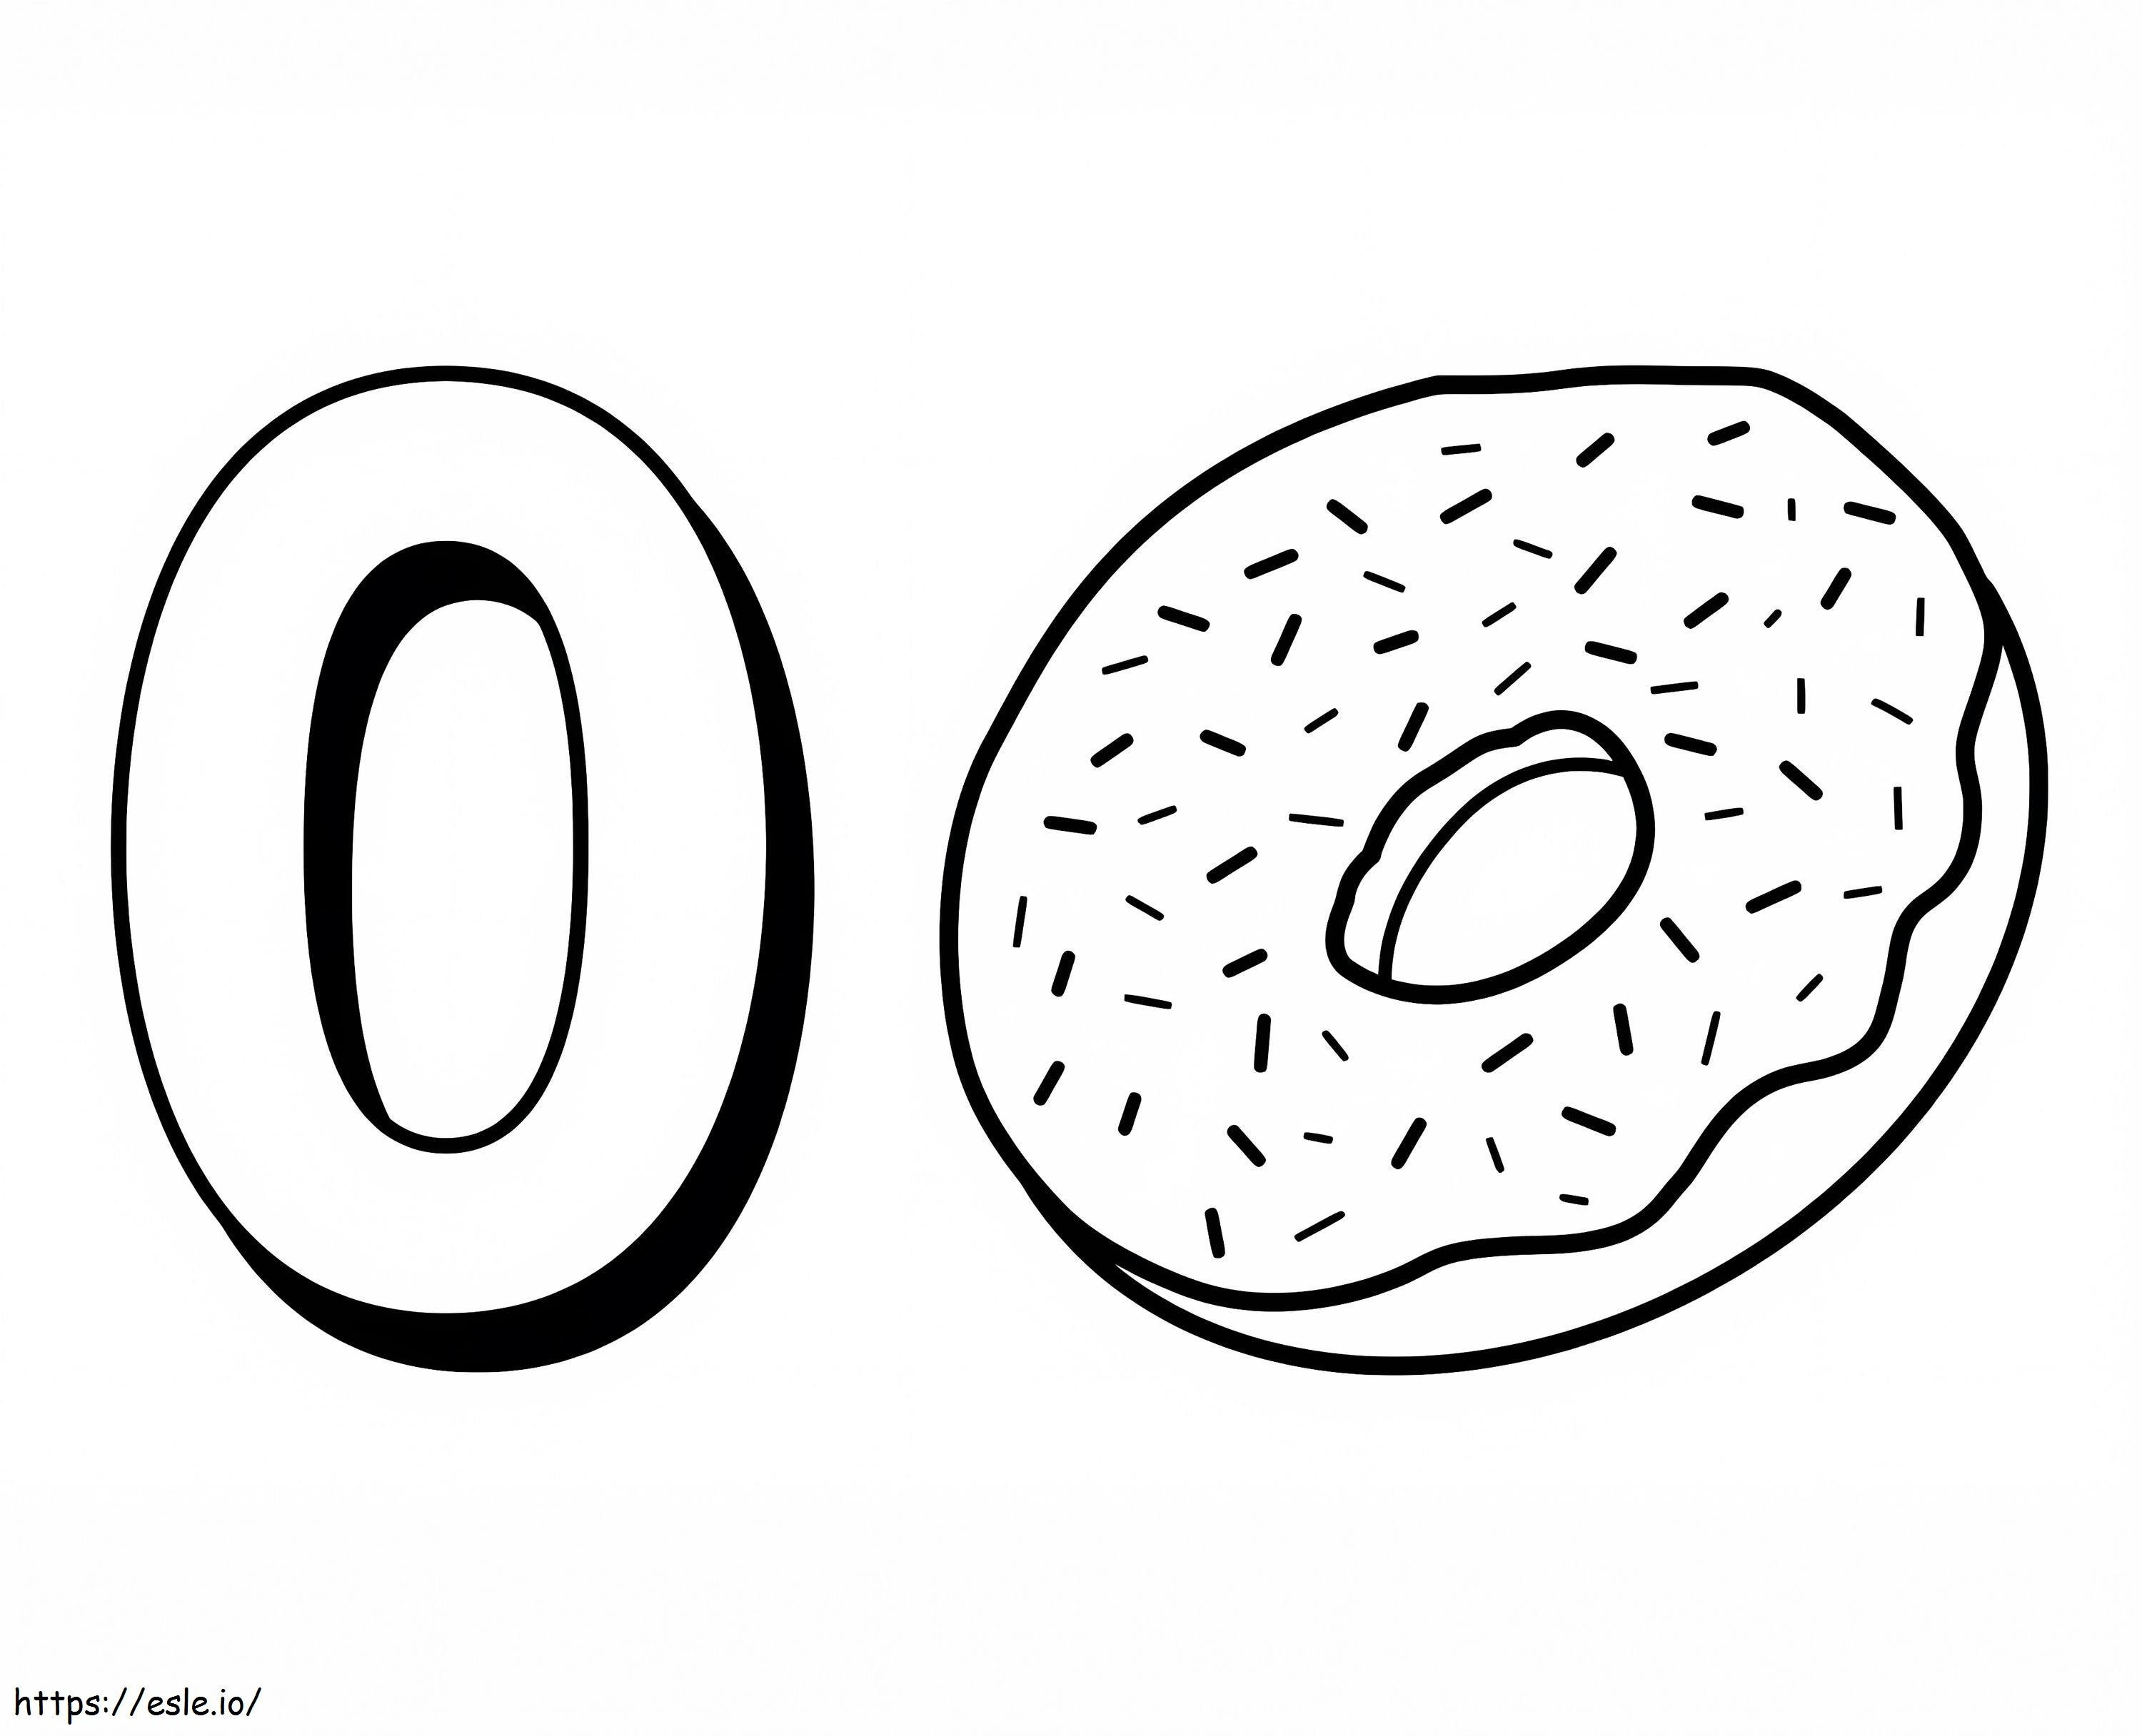 Donut und Nummer 0 ausmalbilder